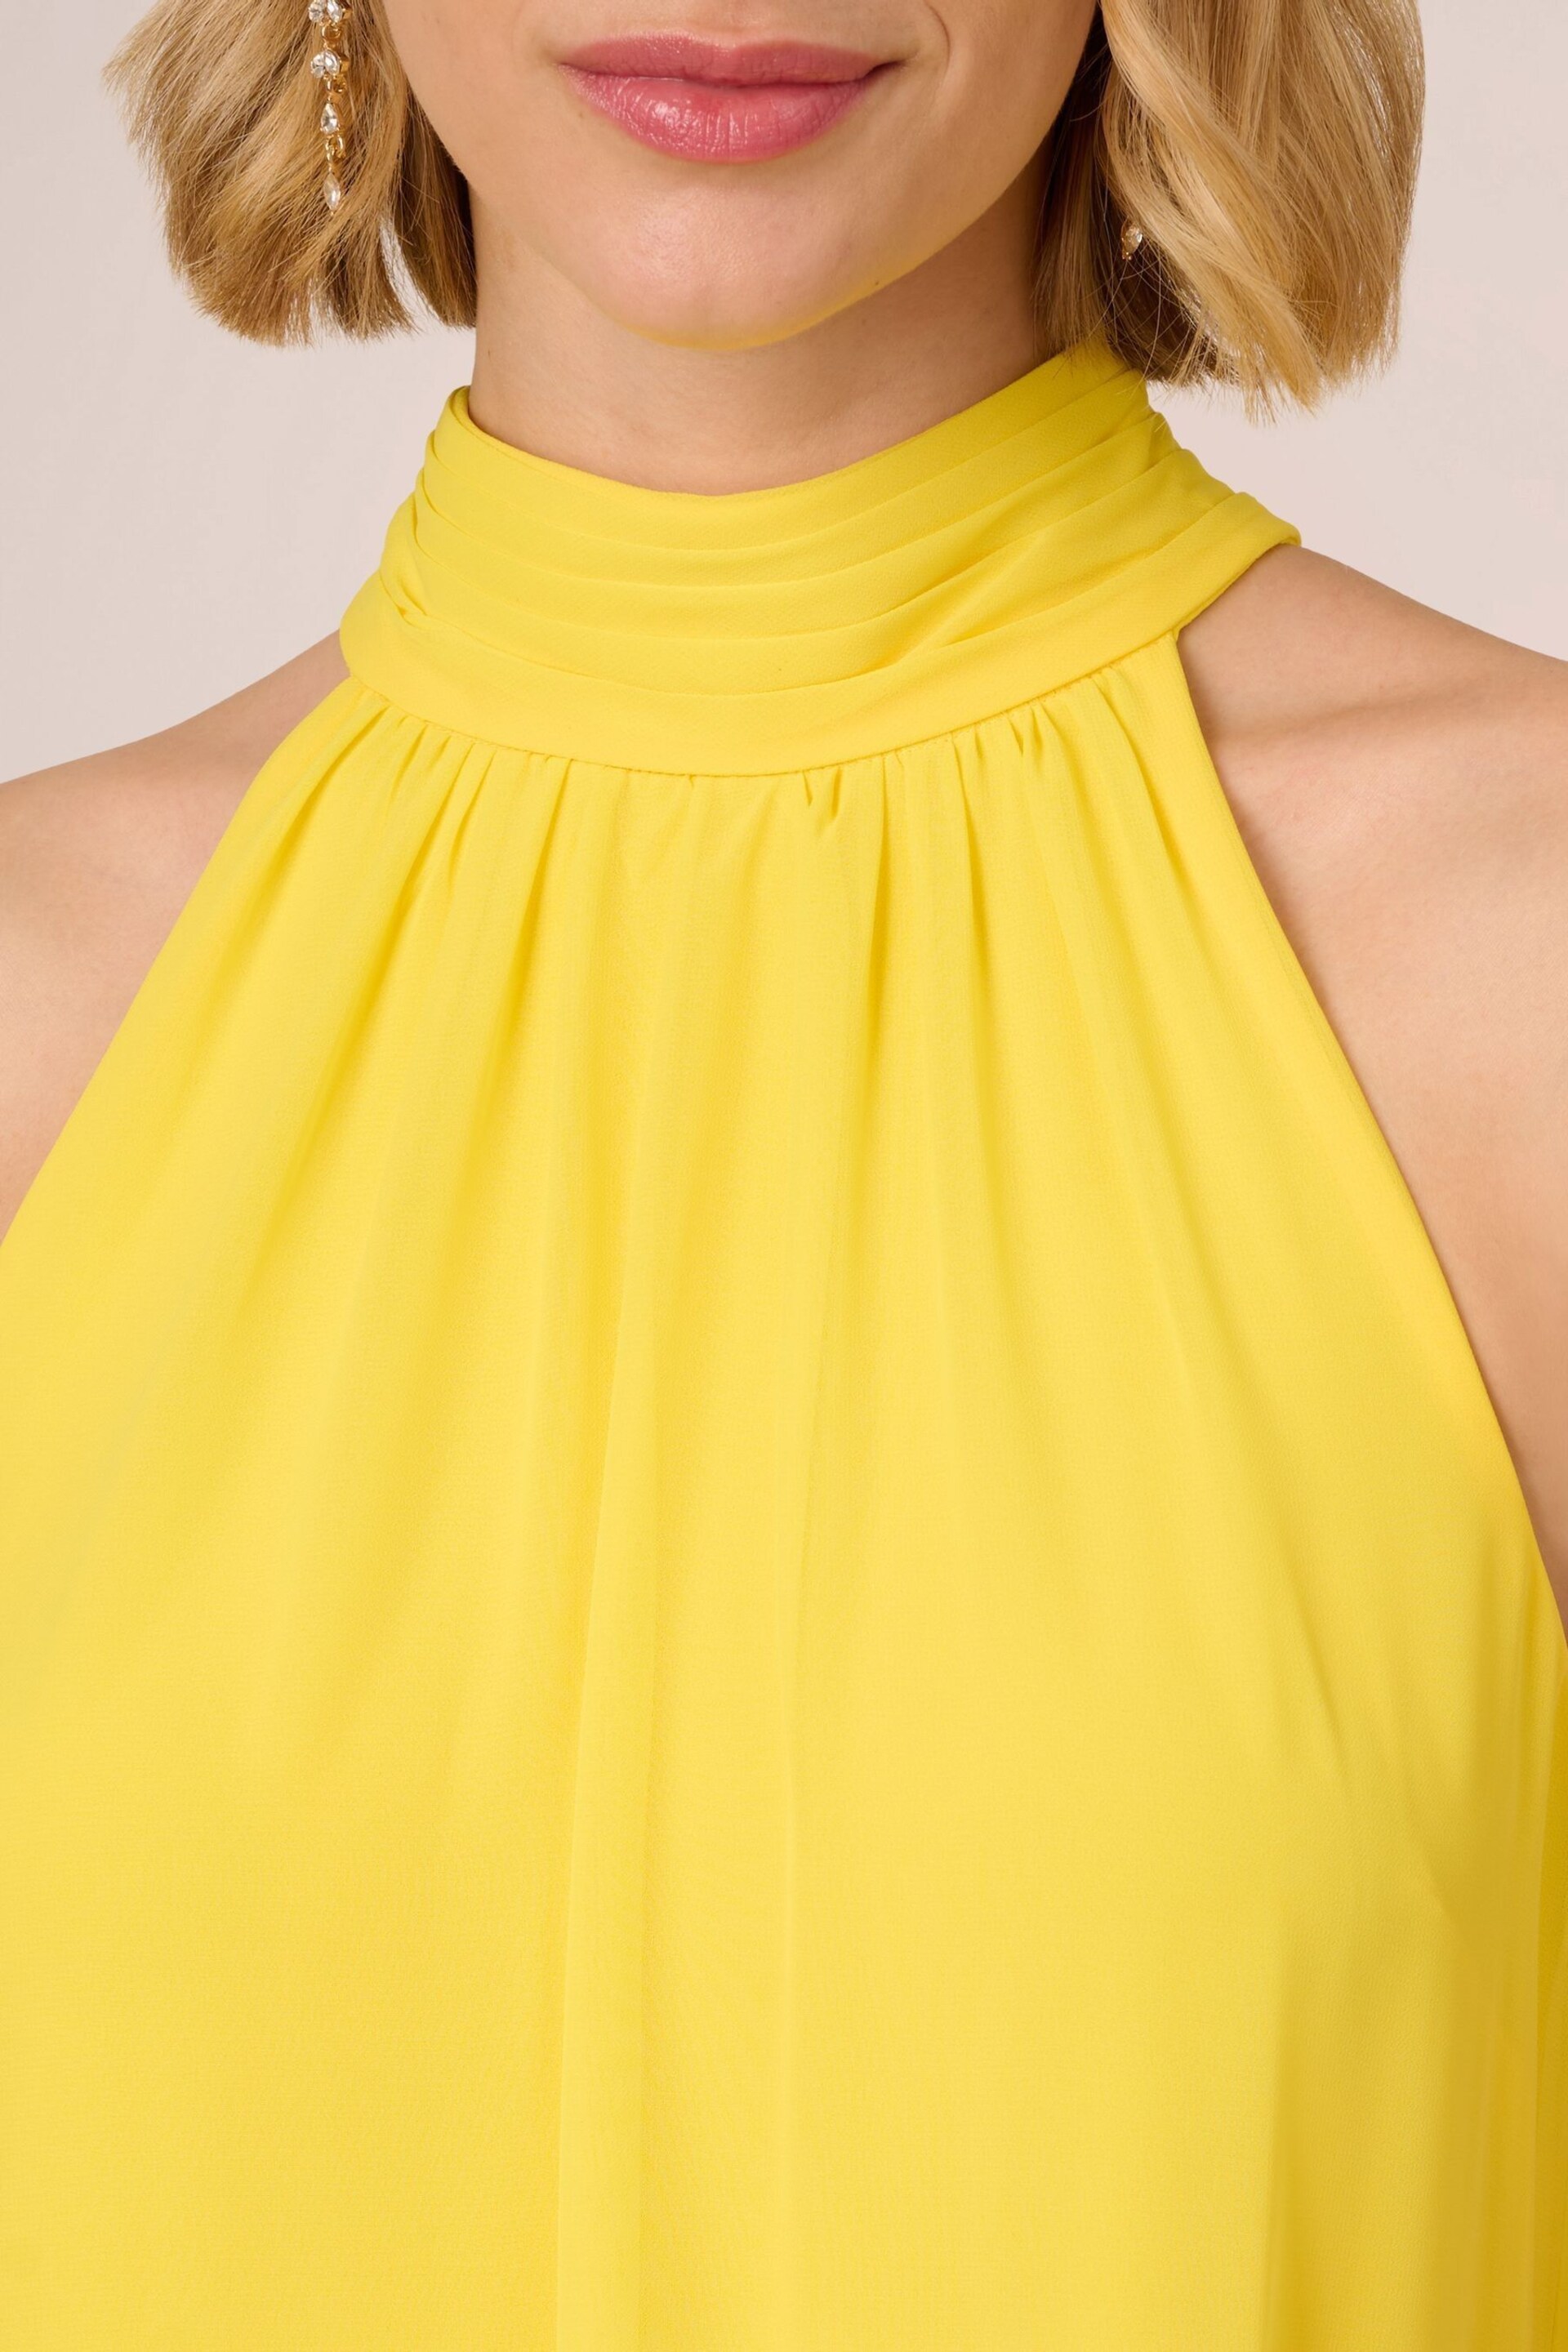 Adrianna Papell Yellow Chiffon Trapeze Short Dress - Image 4 of 7